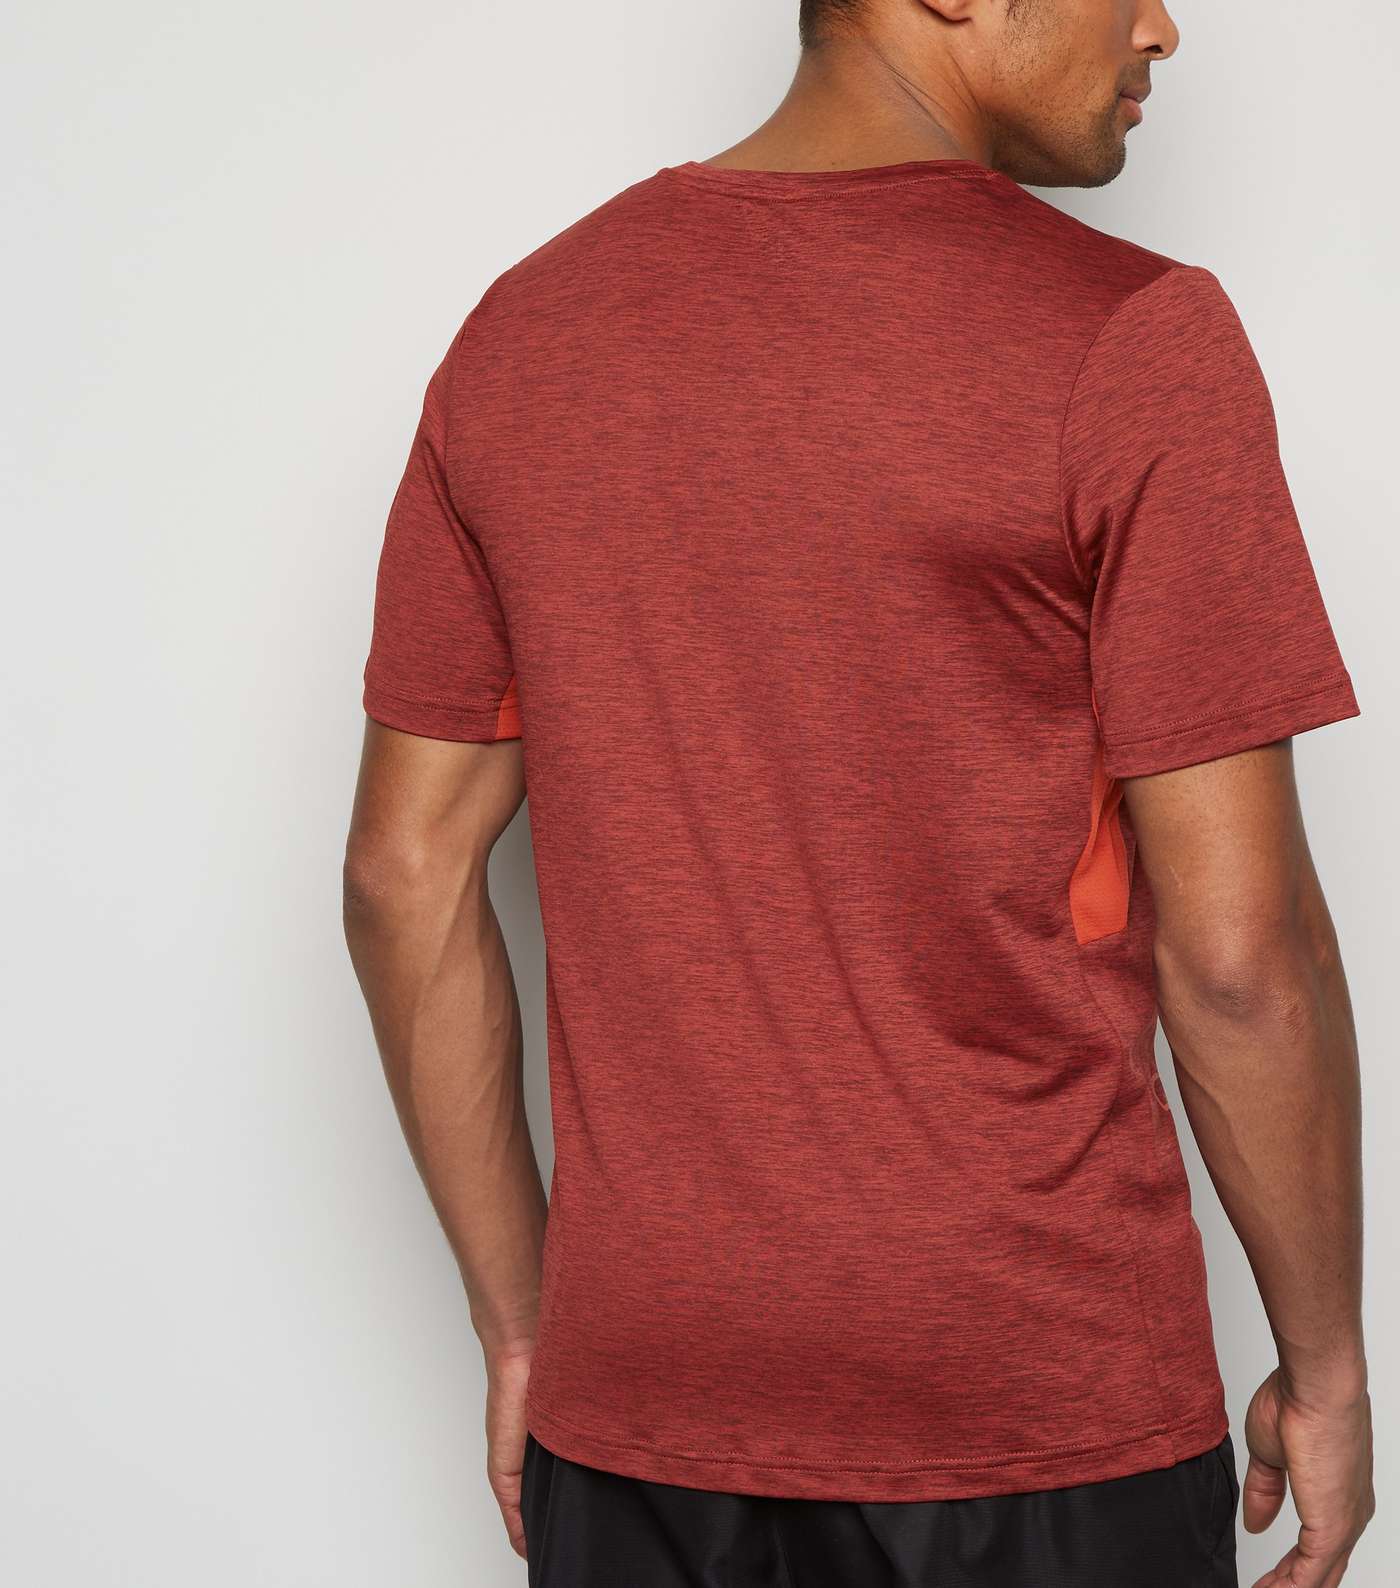 GymPro Red Mesh Panel T-Shirt Image 3